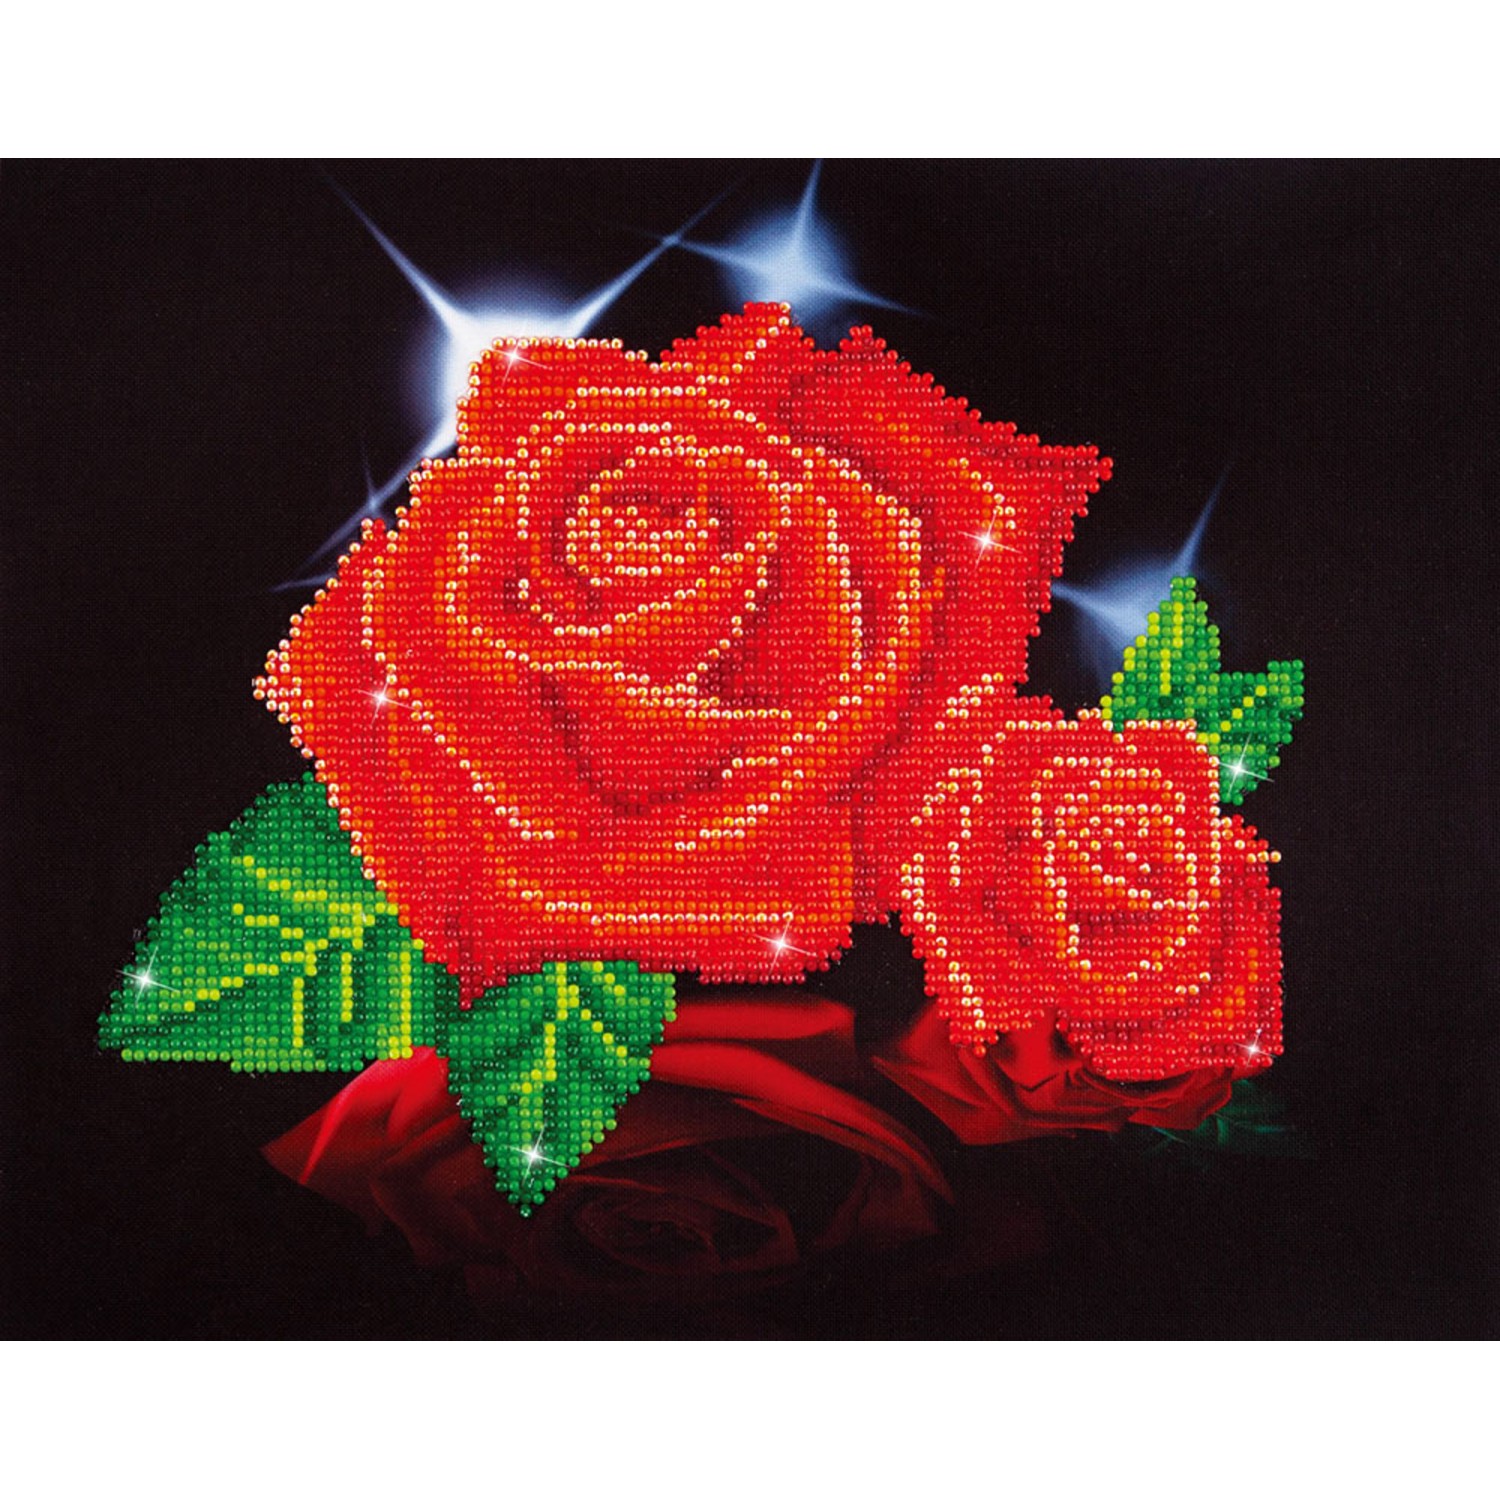 Red Roses - Diamond Art